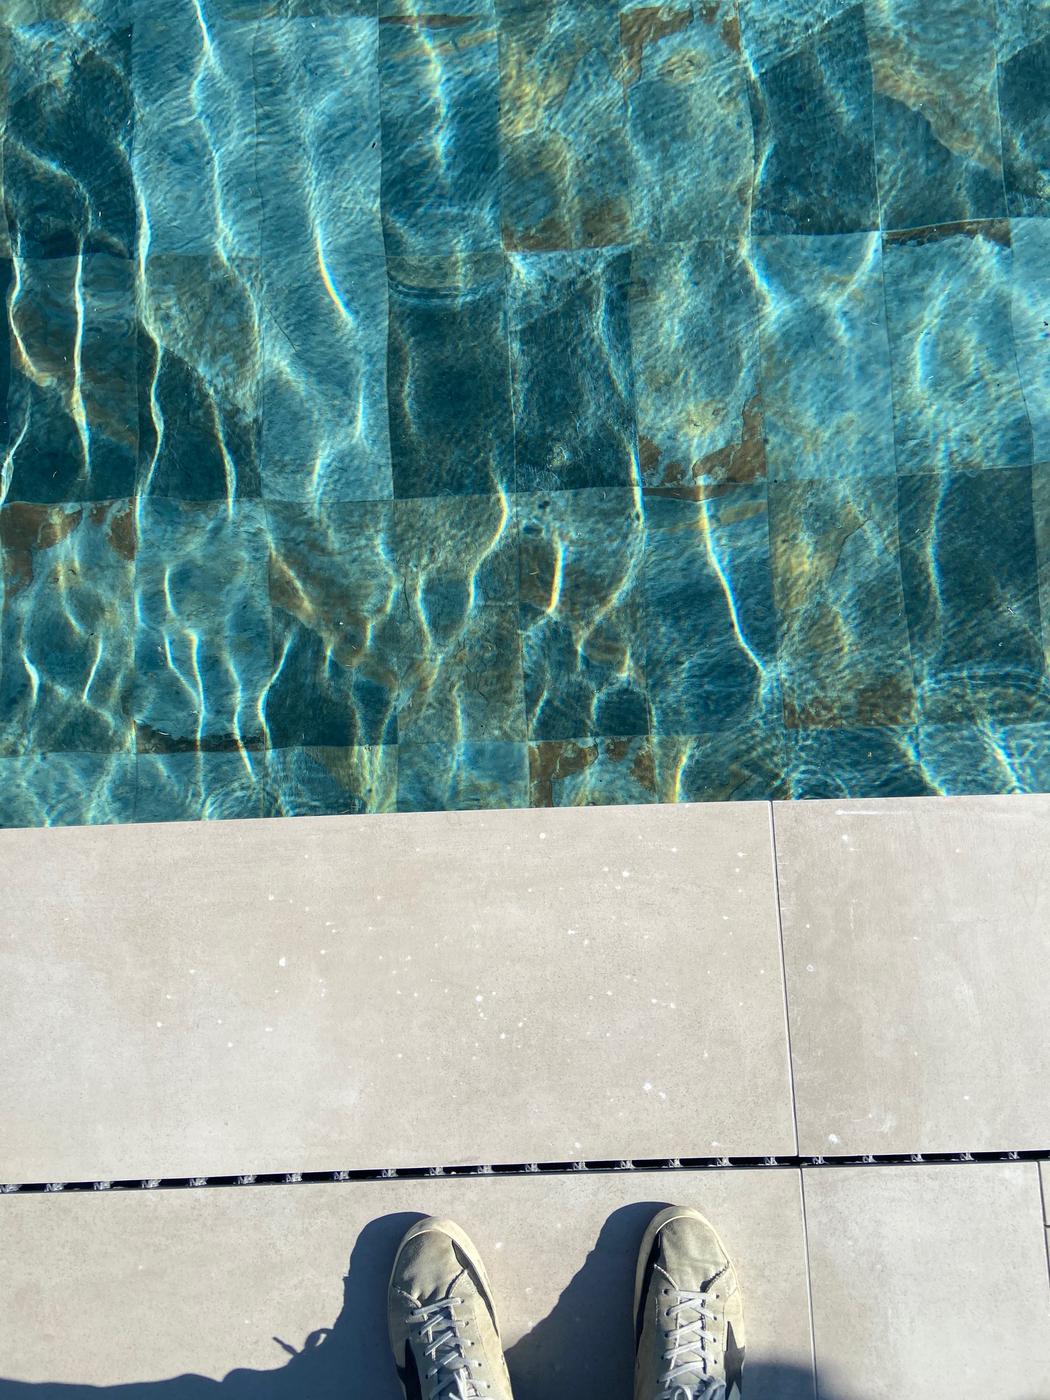 Carrelage effet pierre multicouleur 30x60 cm sur bord de piscine aux eaux bleues cristallines et carrelage adjacent béton clair